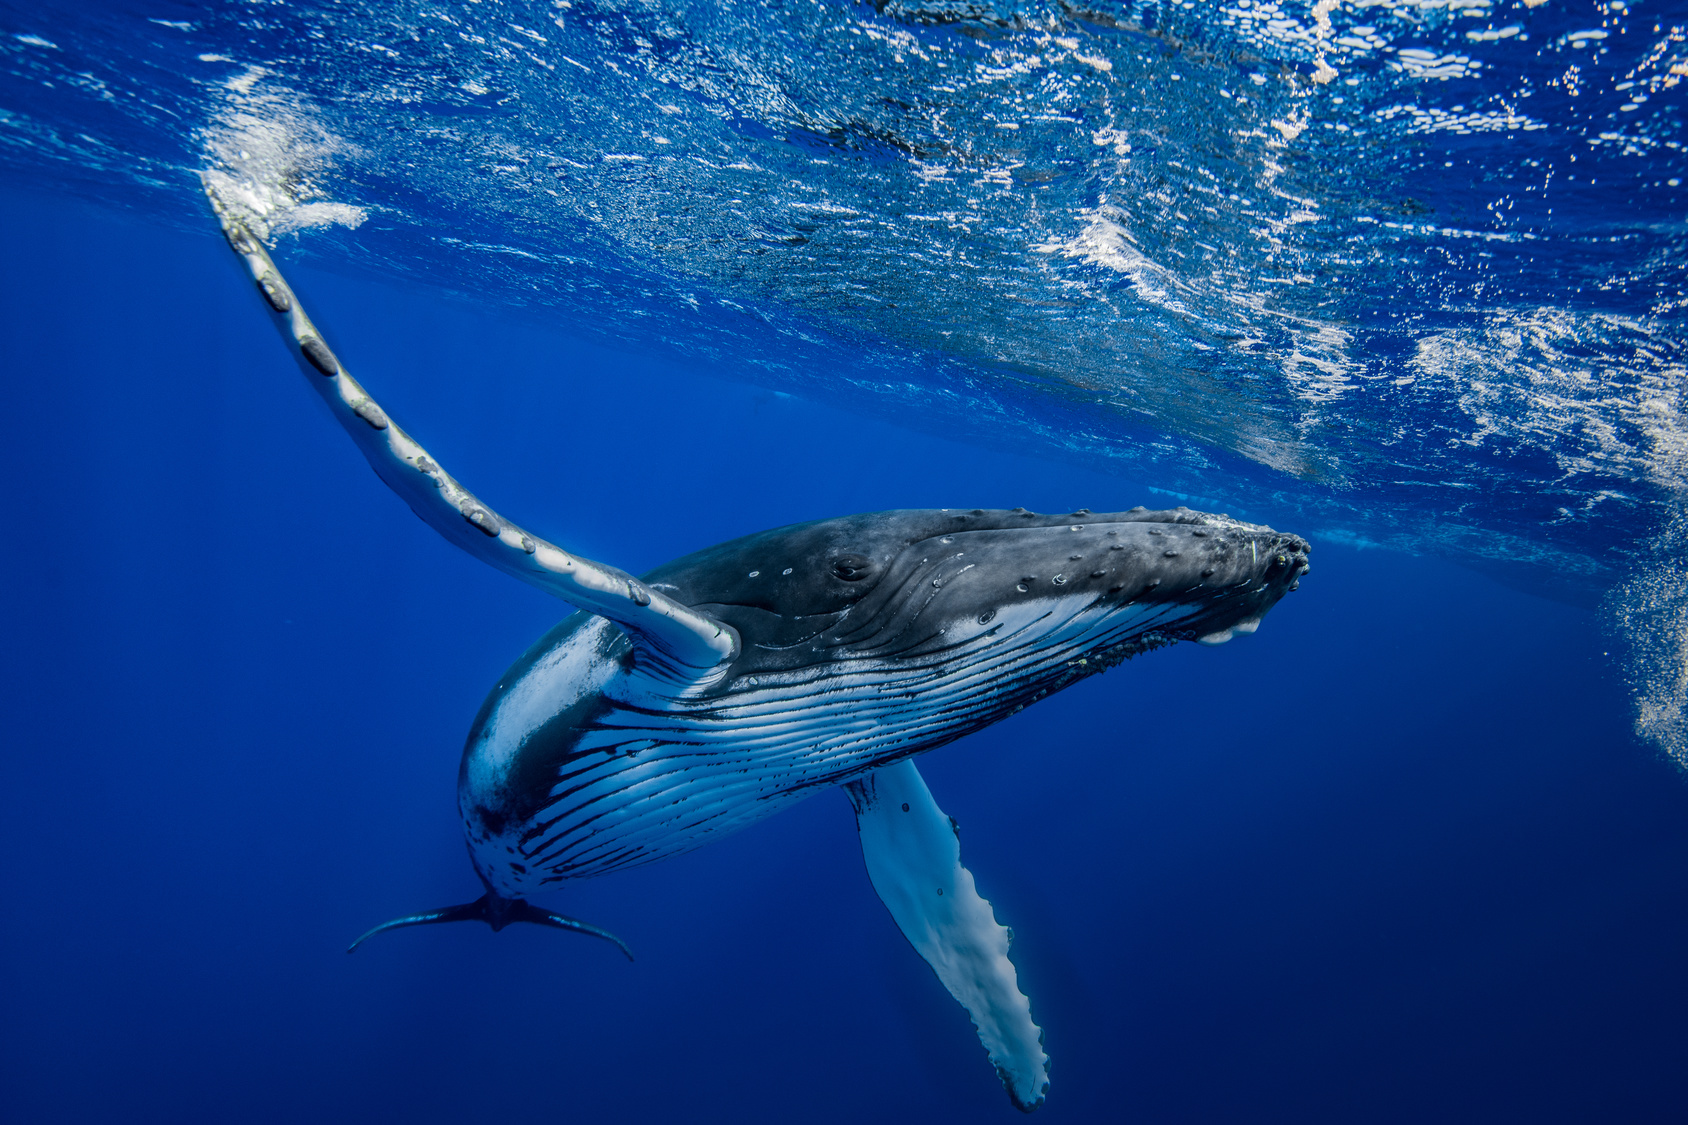 Les baleines à bosse pourront bientôt compter sur l’IA de Google pour vivre un peu plus en paix. © romain, Fotolia

